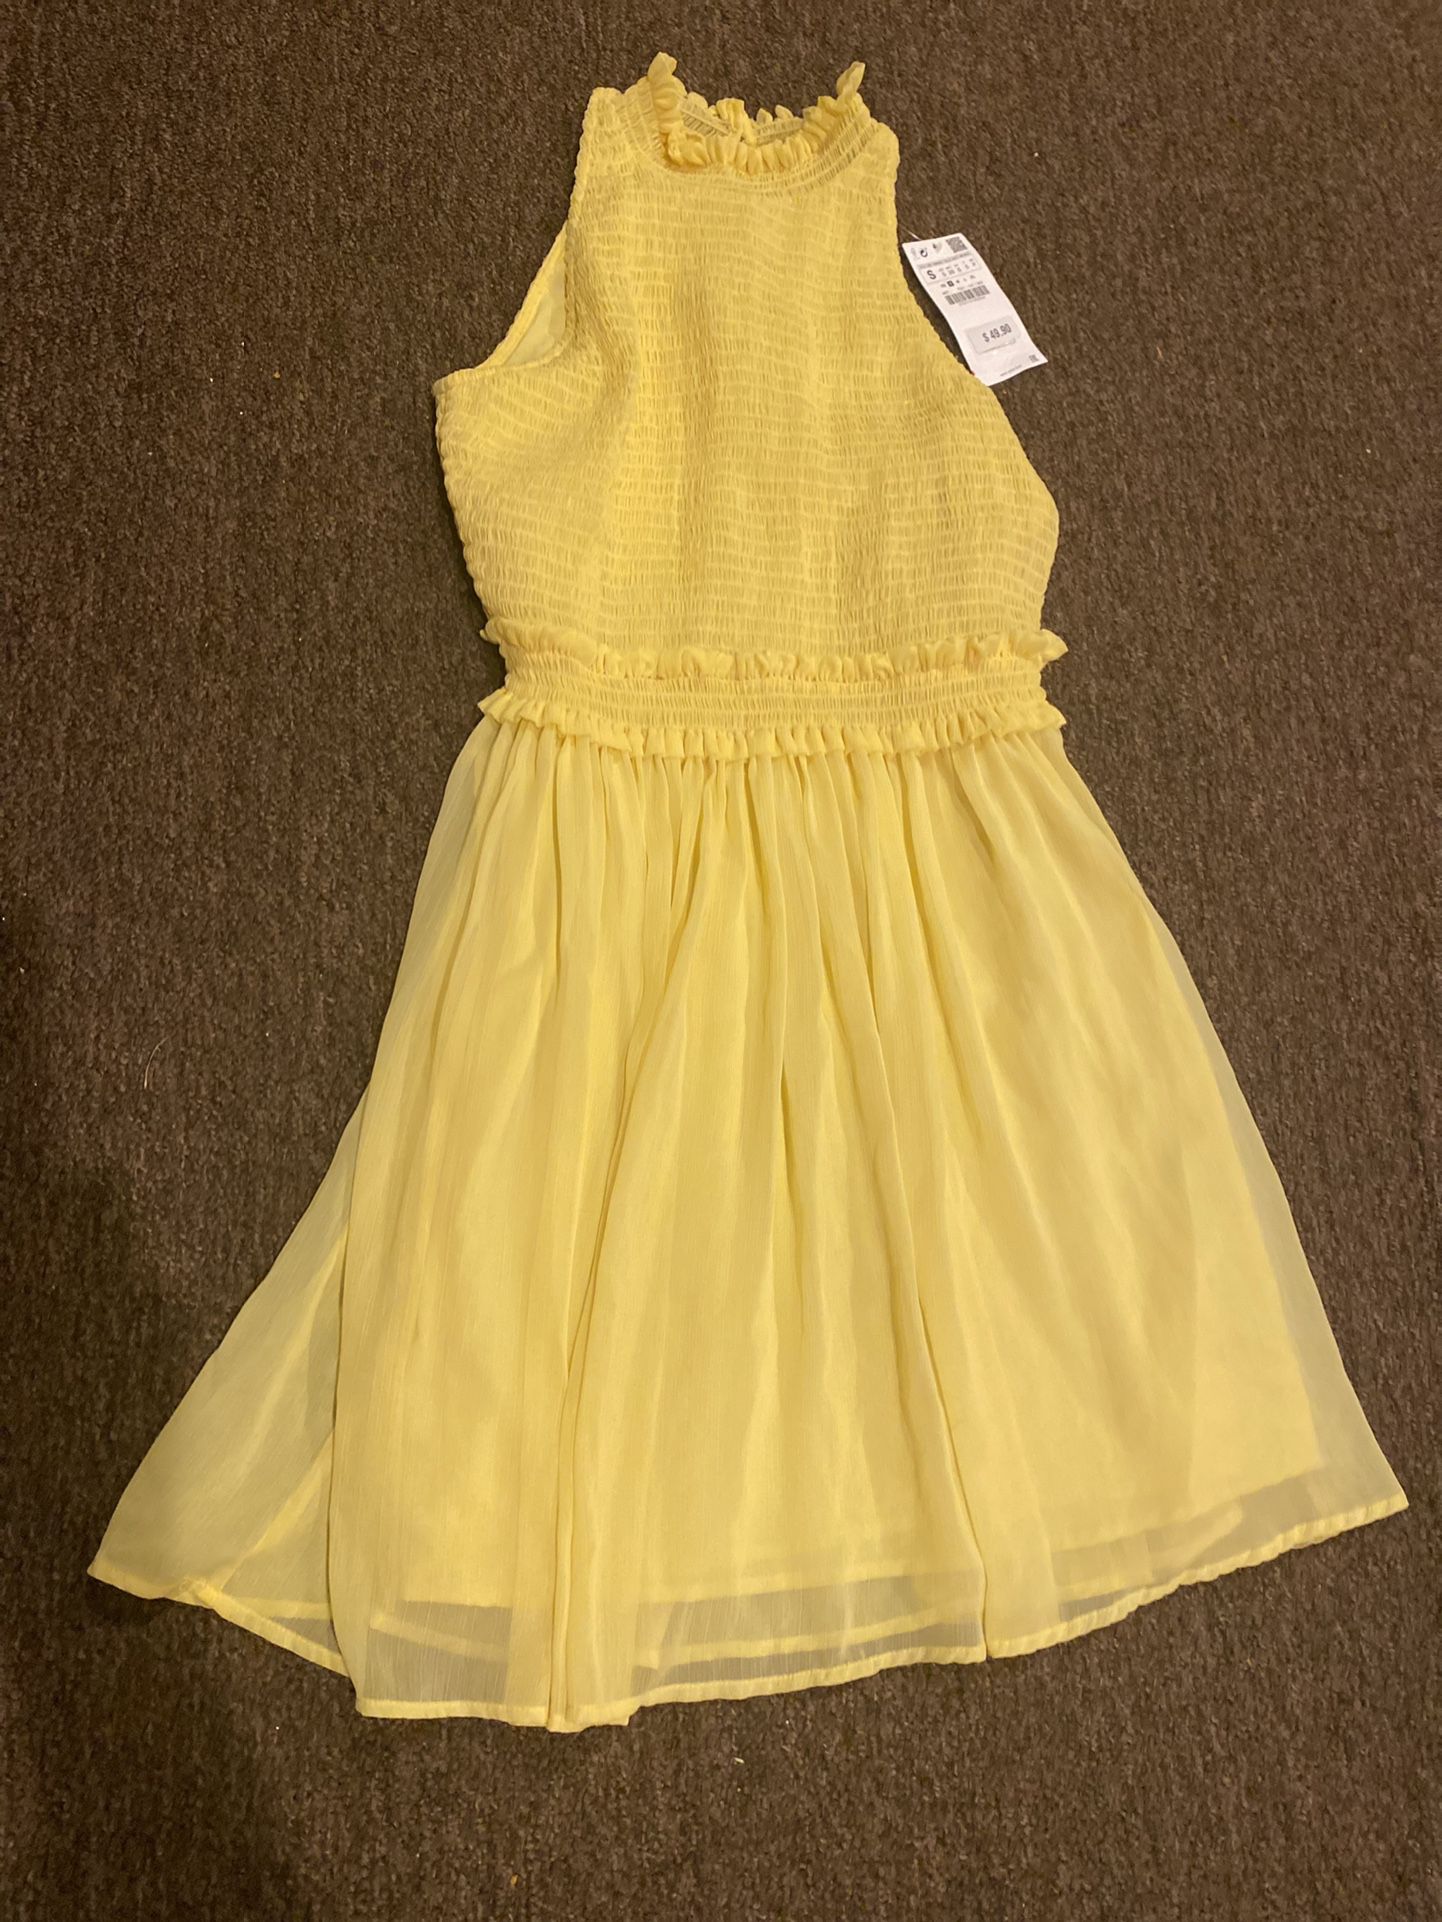 NWT Zara Basics women’s Size small yellow dress